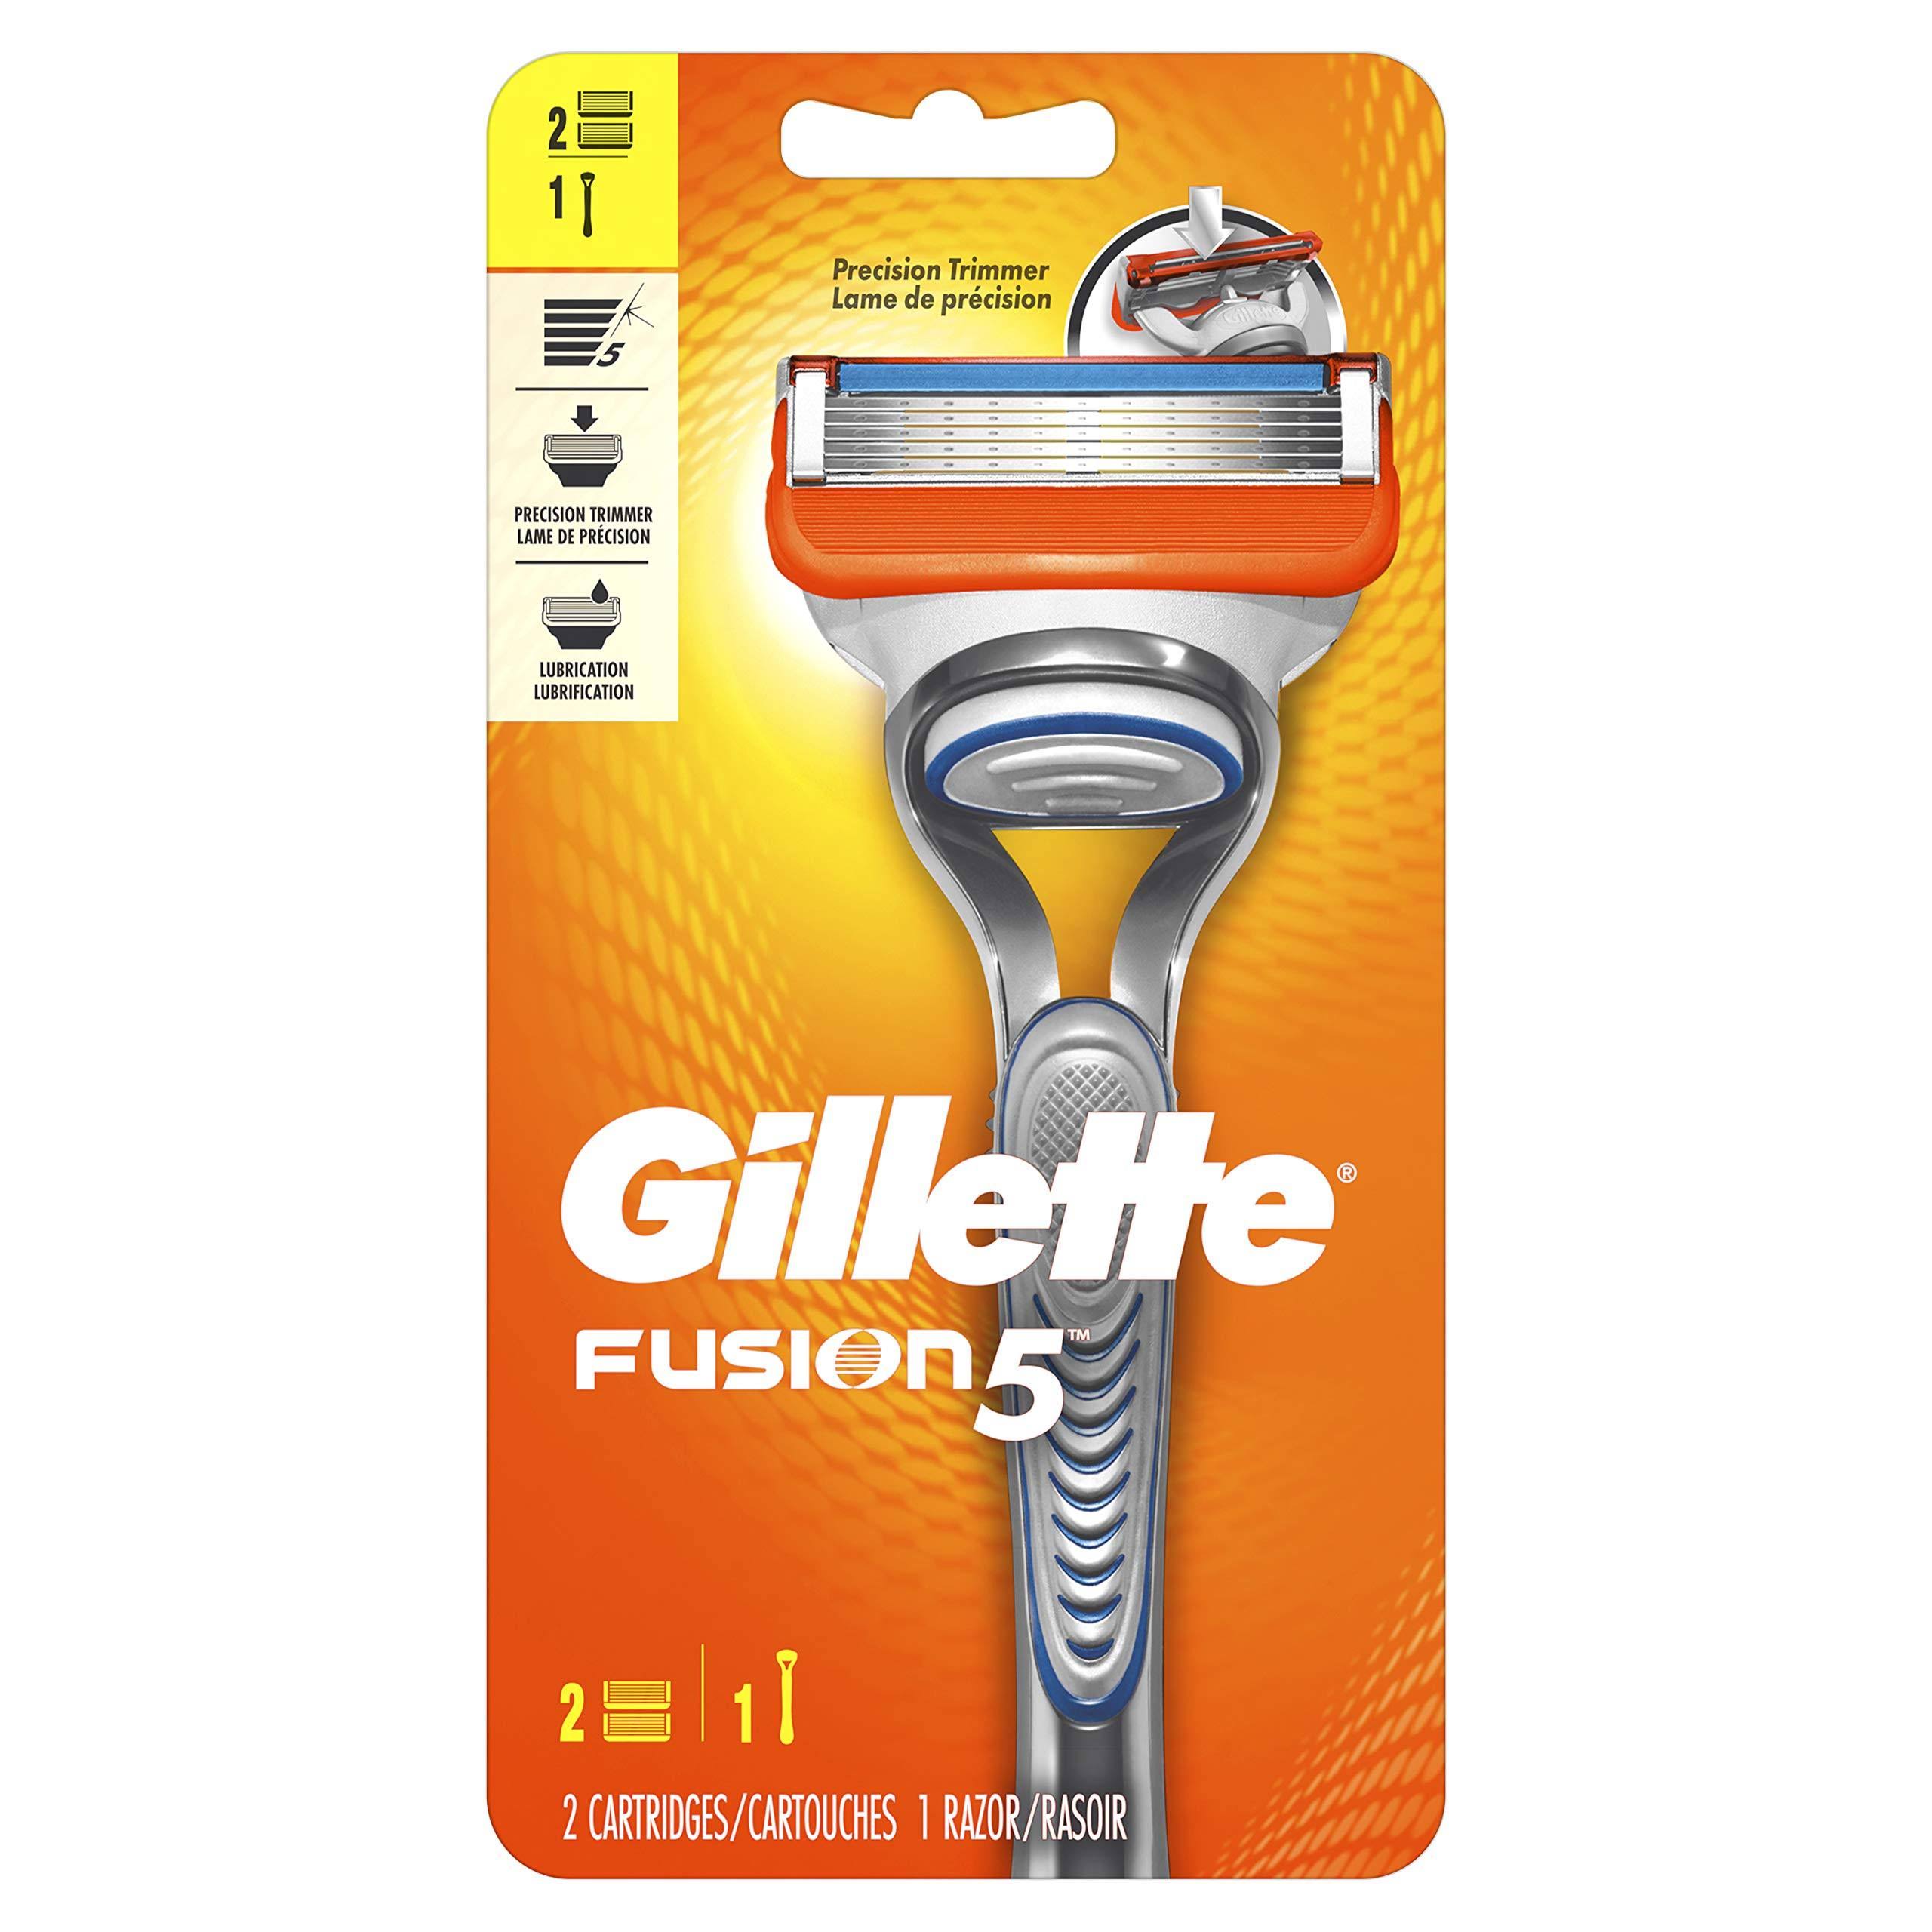 Gillette Fusion5 Precision Trimmer Blades Razor with Cartridge